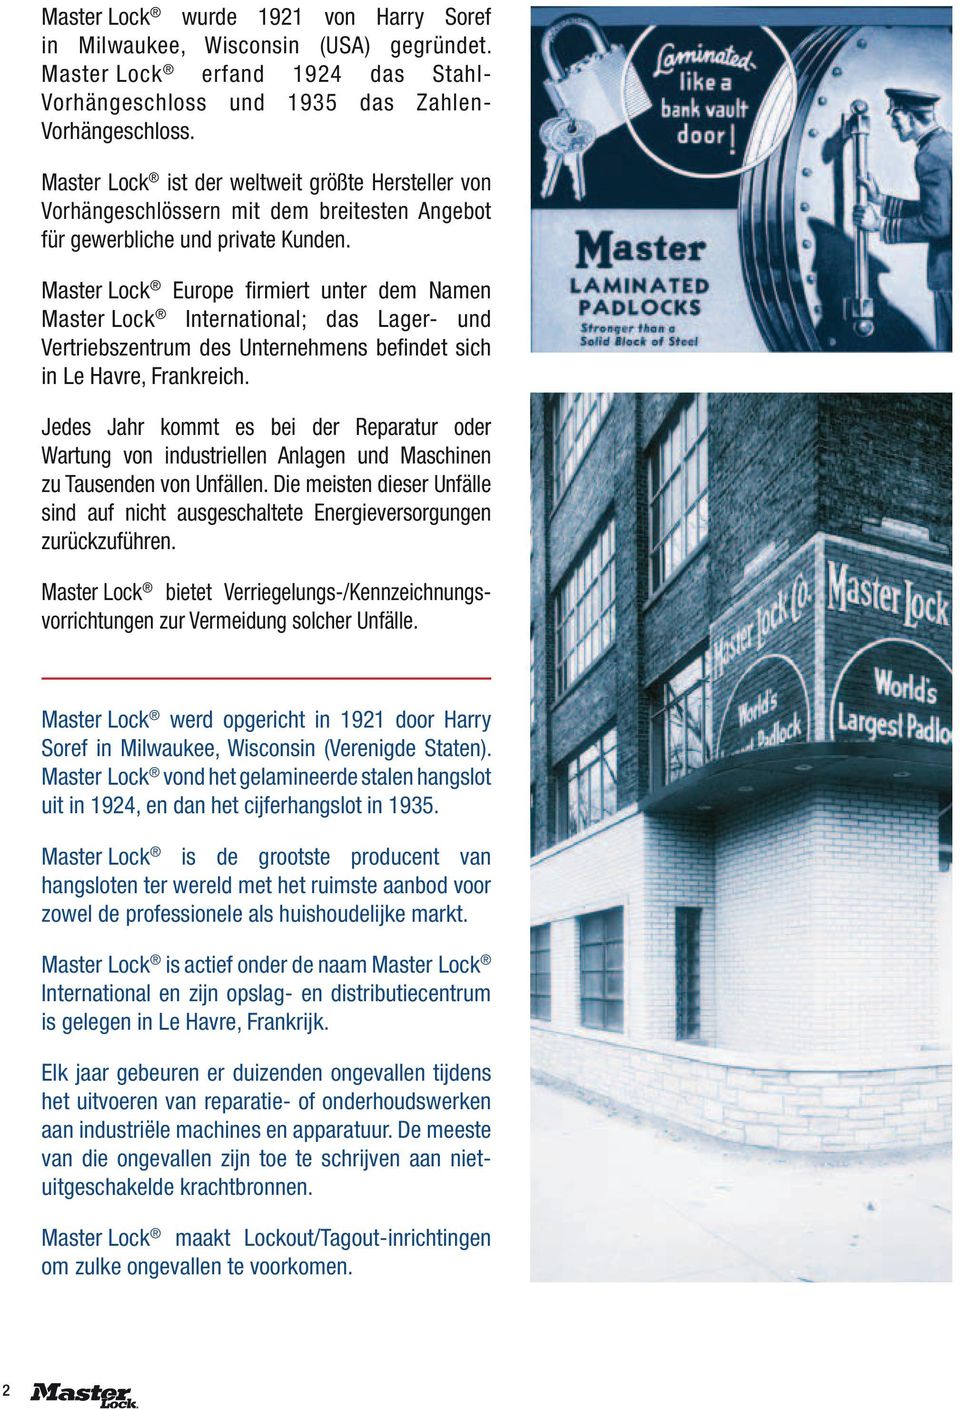 Master Lock Europe firmiert unter dem Namen Master Lock International; das Lager- und Vertriebszentrum des Unternehmens befindet sich in Le Havre, Frankreich.